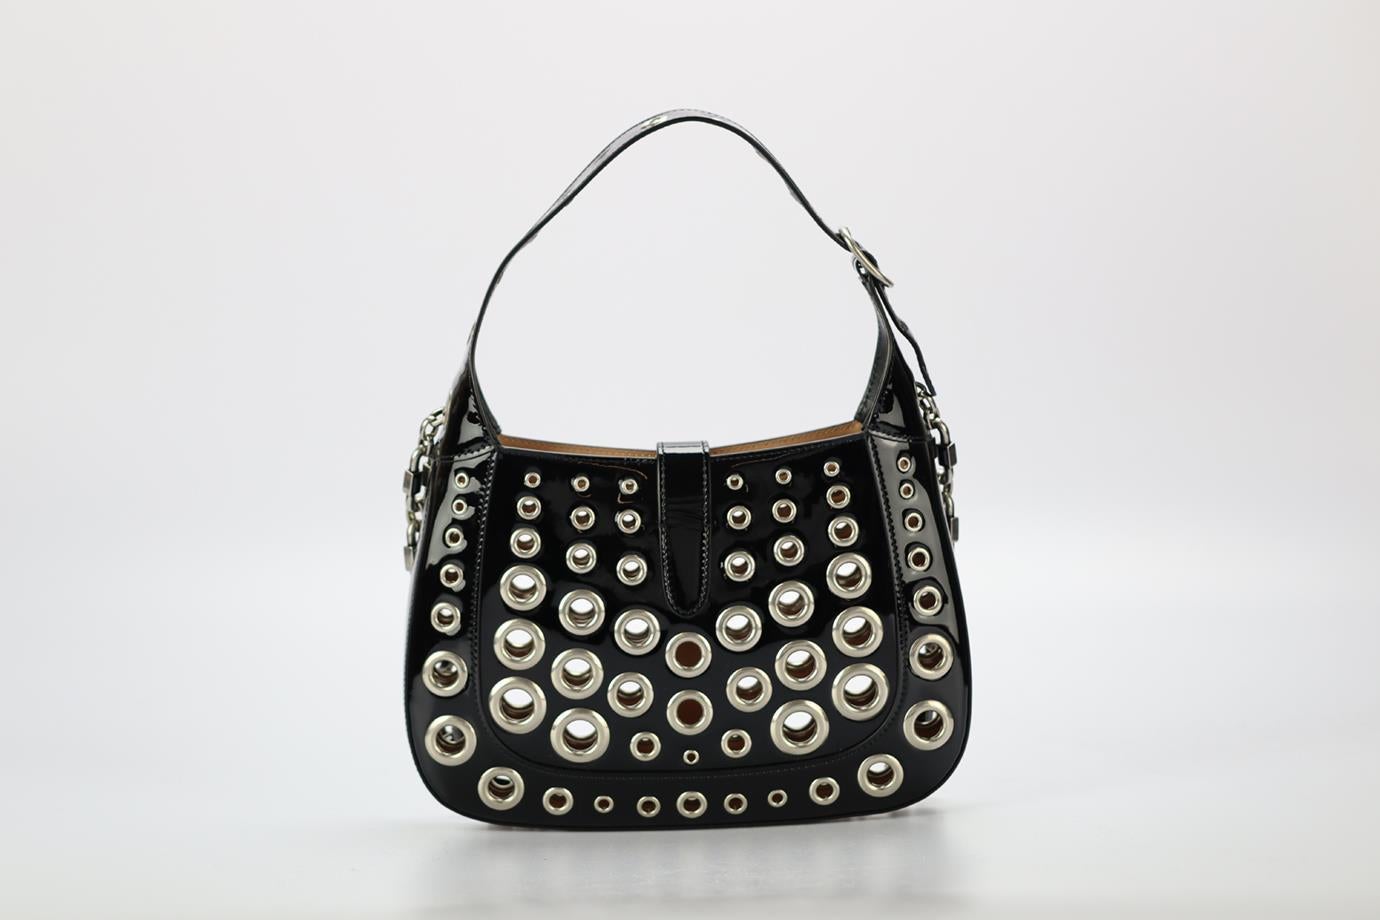 Gucci Ha Ha Ha Jackie 1961 Eyelet Embellished Patent Leather Shoulder Bag 1